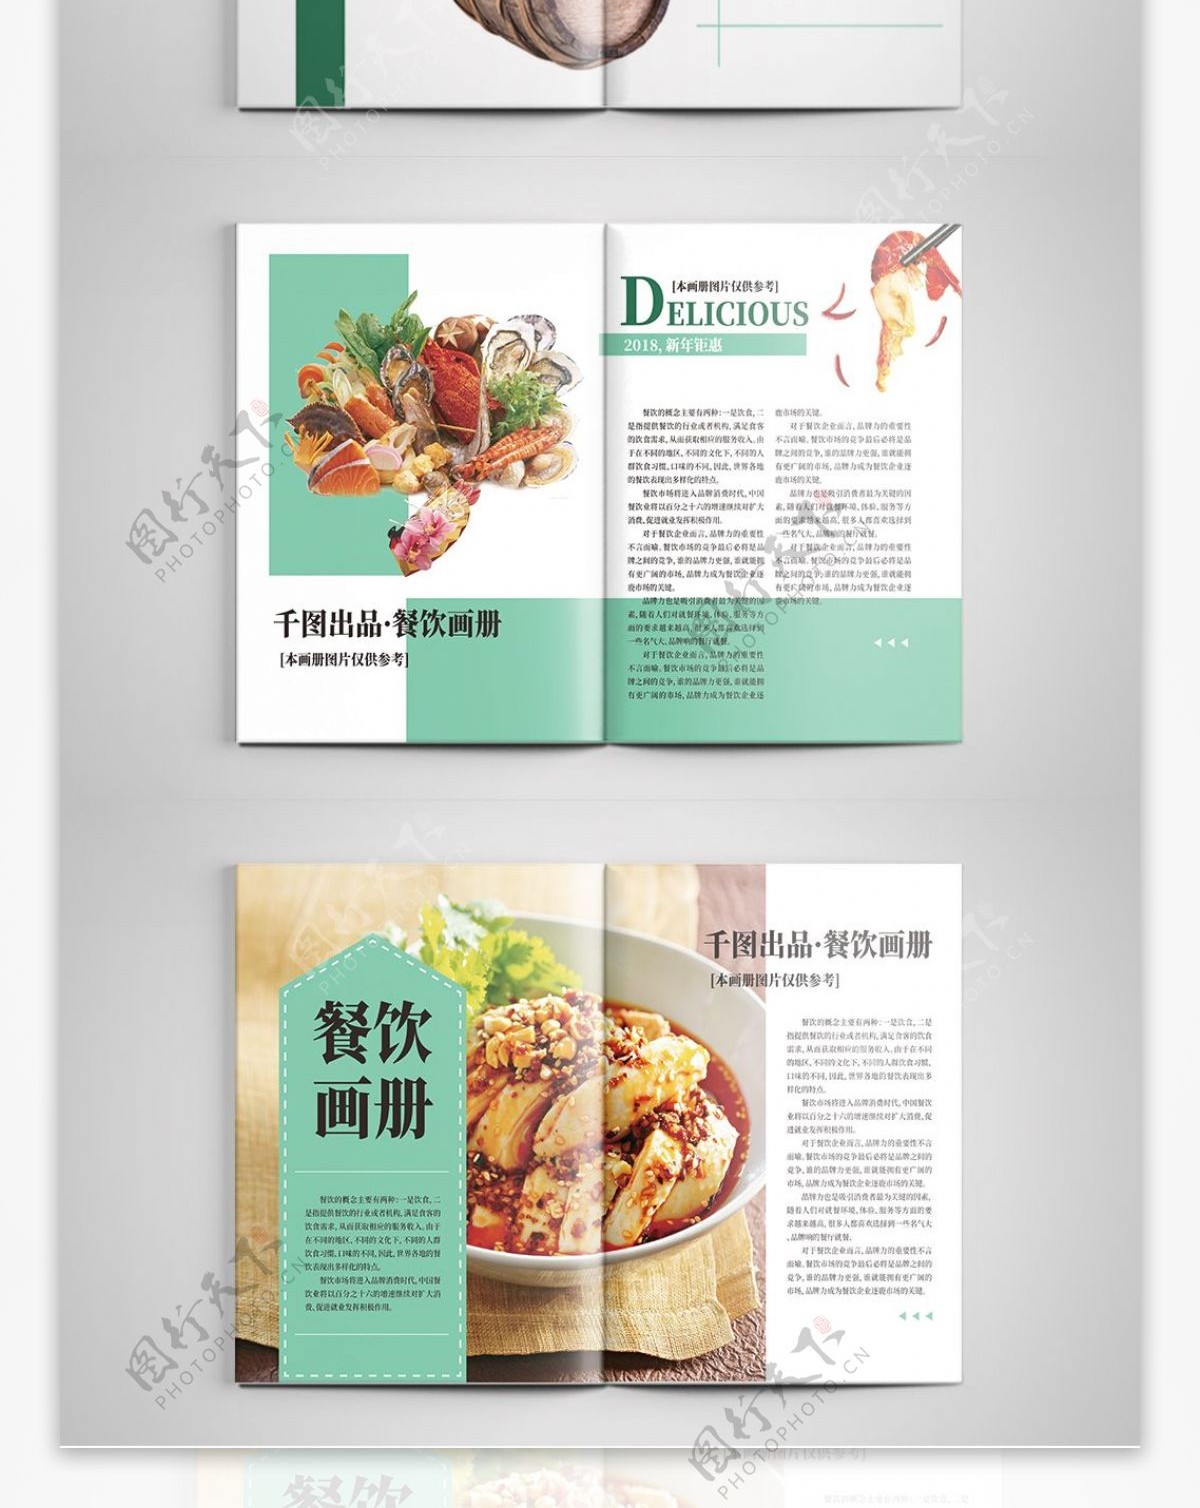 简约时尚青色餐饮美食画册设计ai模板